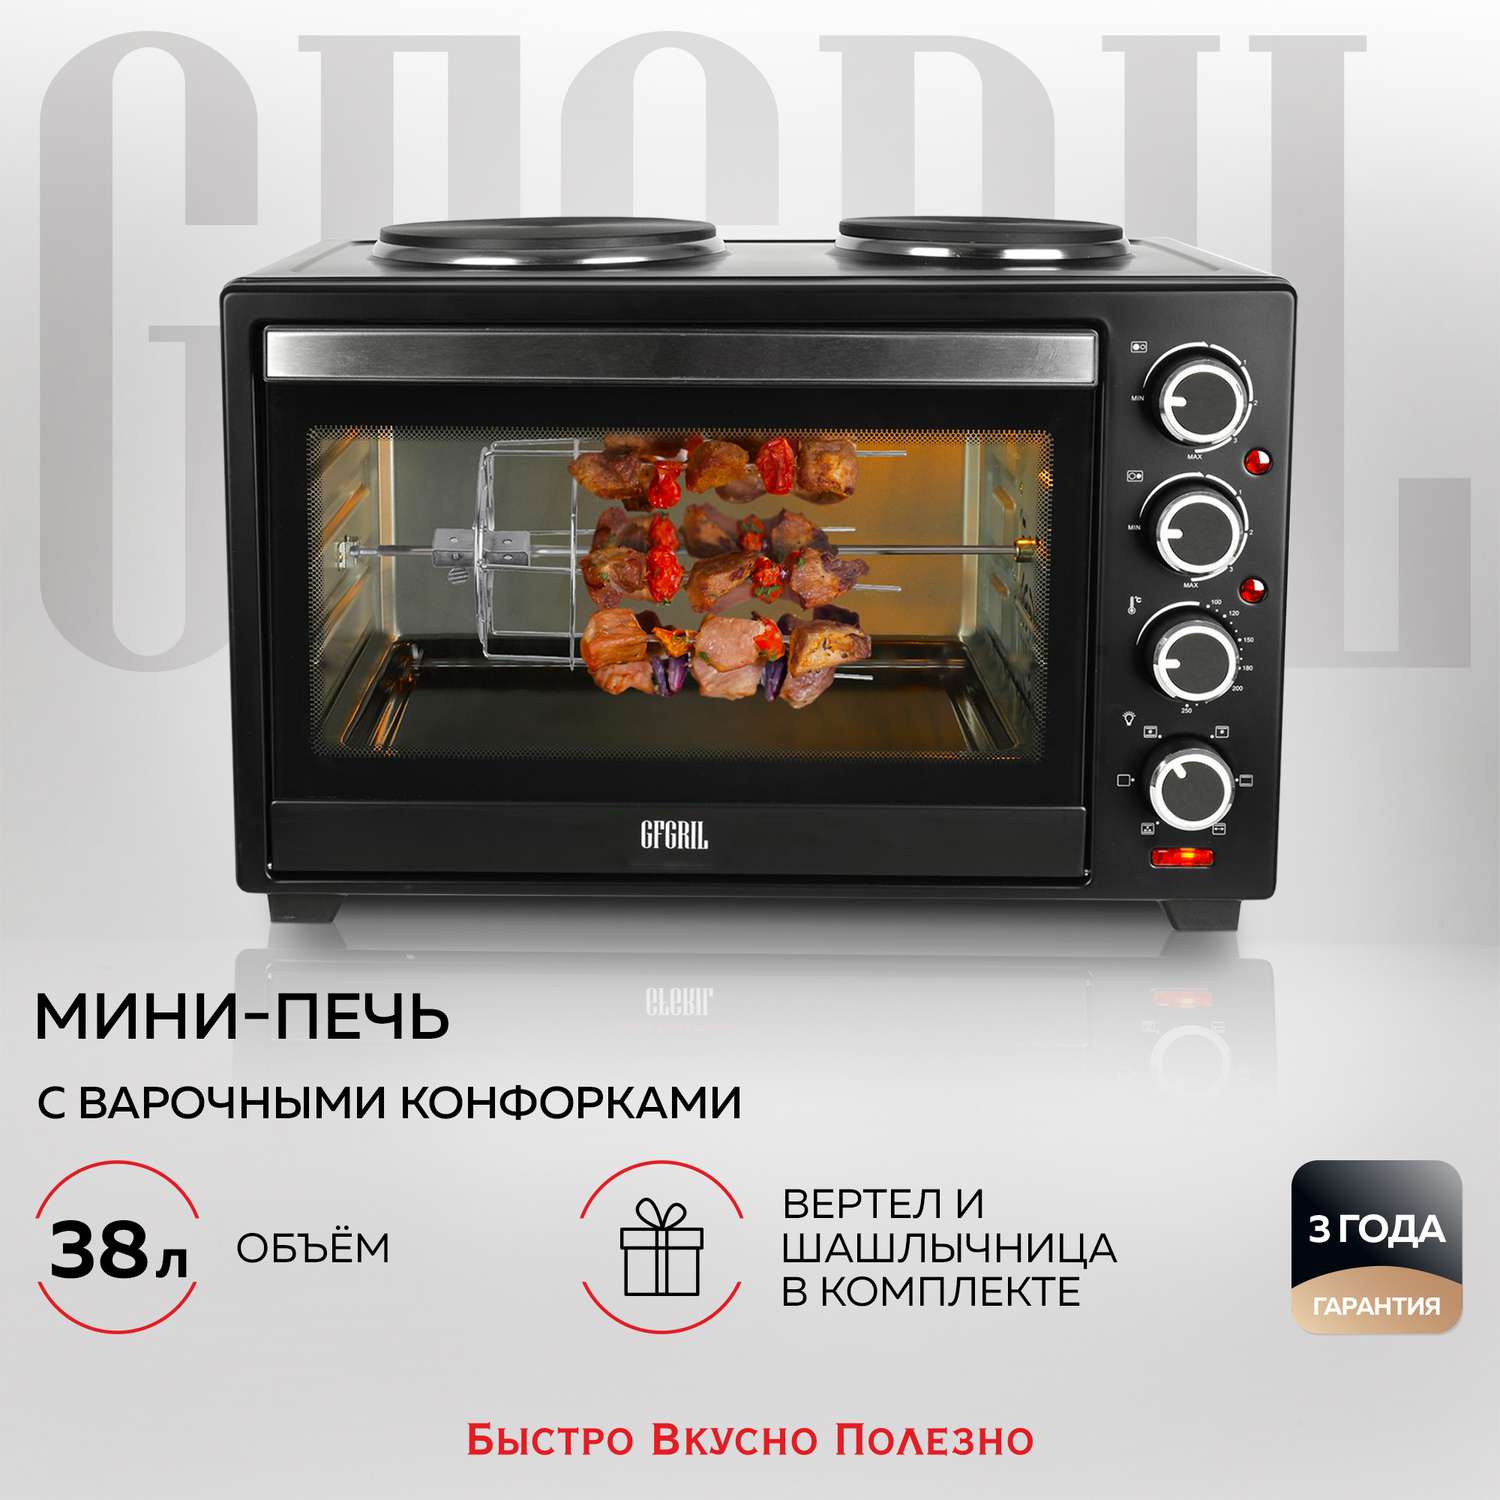 Мини-печь GFGRIL Многофункциональная GFO-40 духовка с 2 конфорками - фото 1